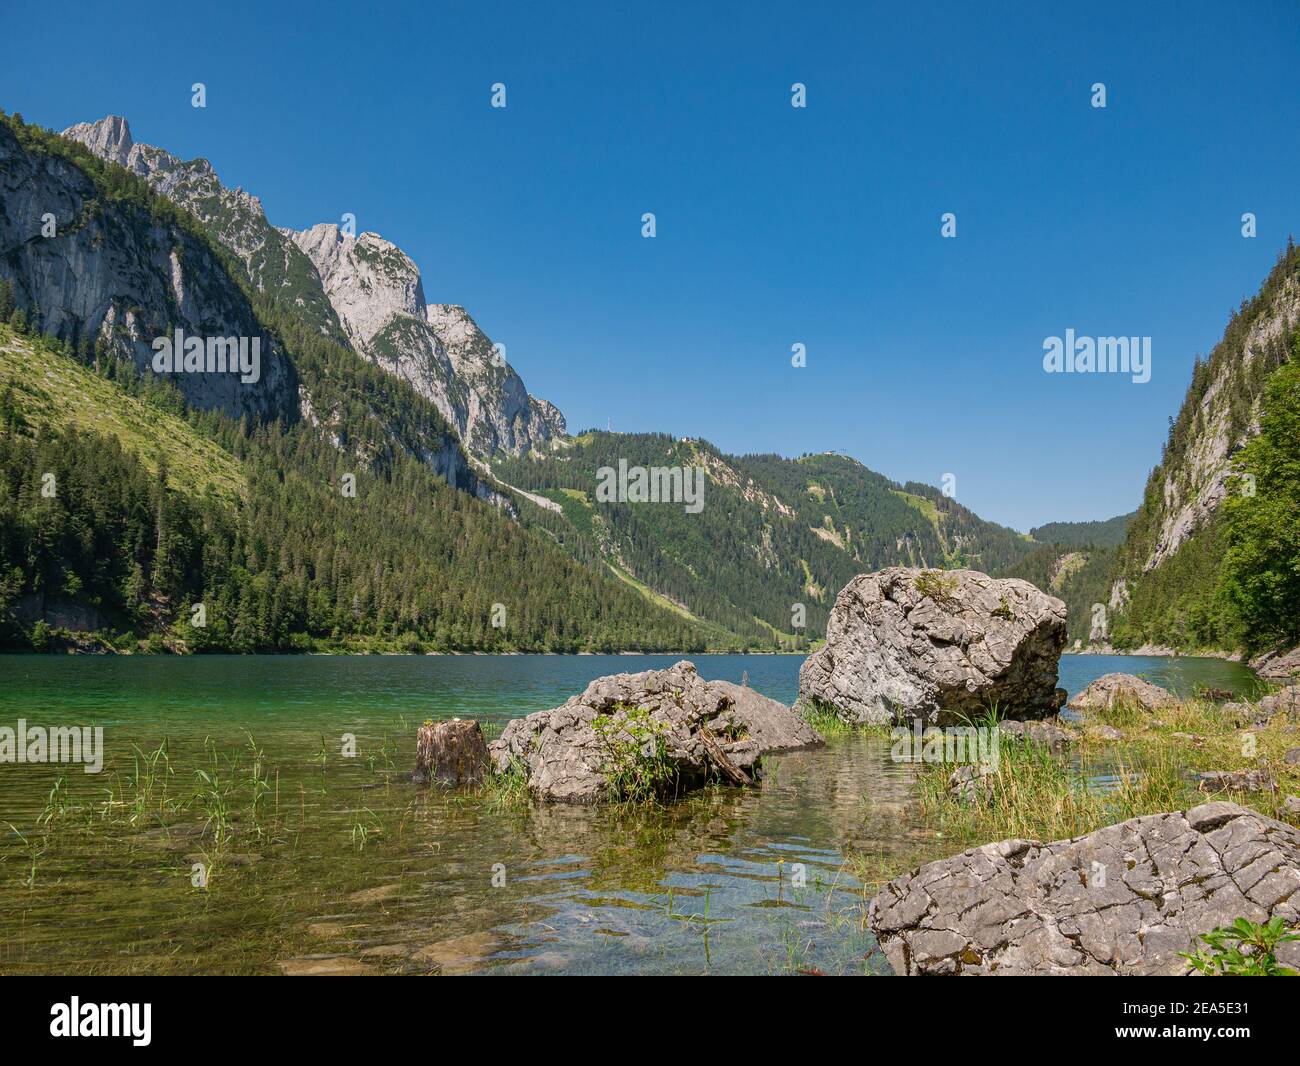 Un tronco de árbol y rocas en un lago claro de montaña En los Alpes Foto de stock